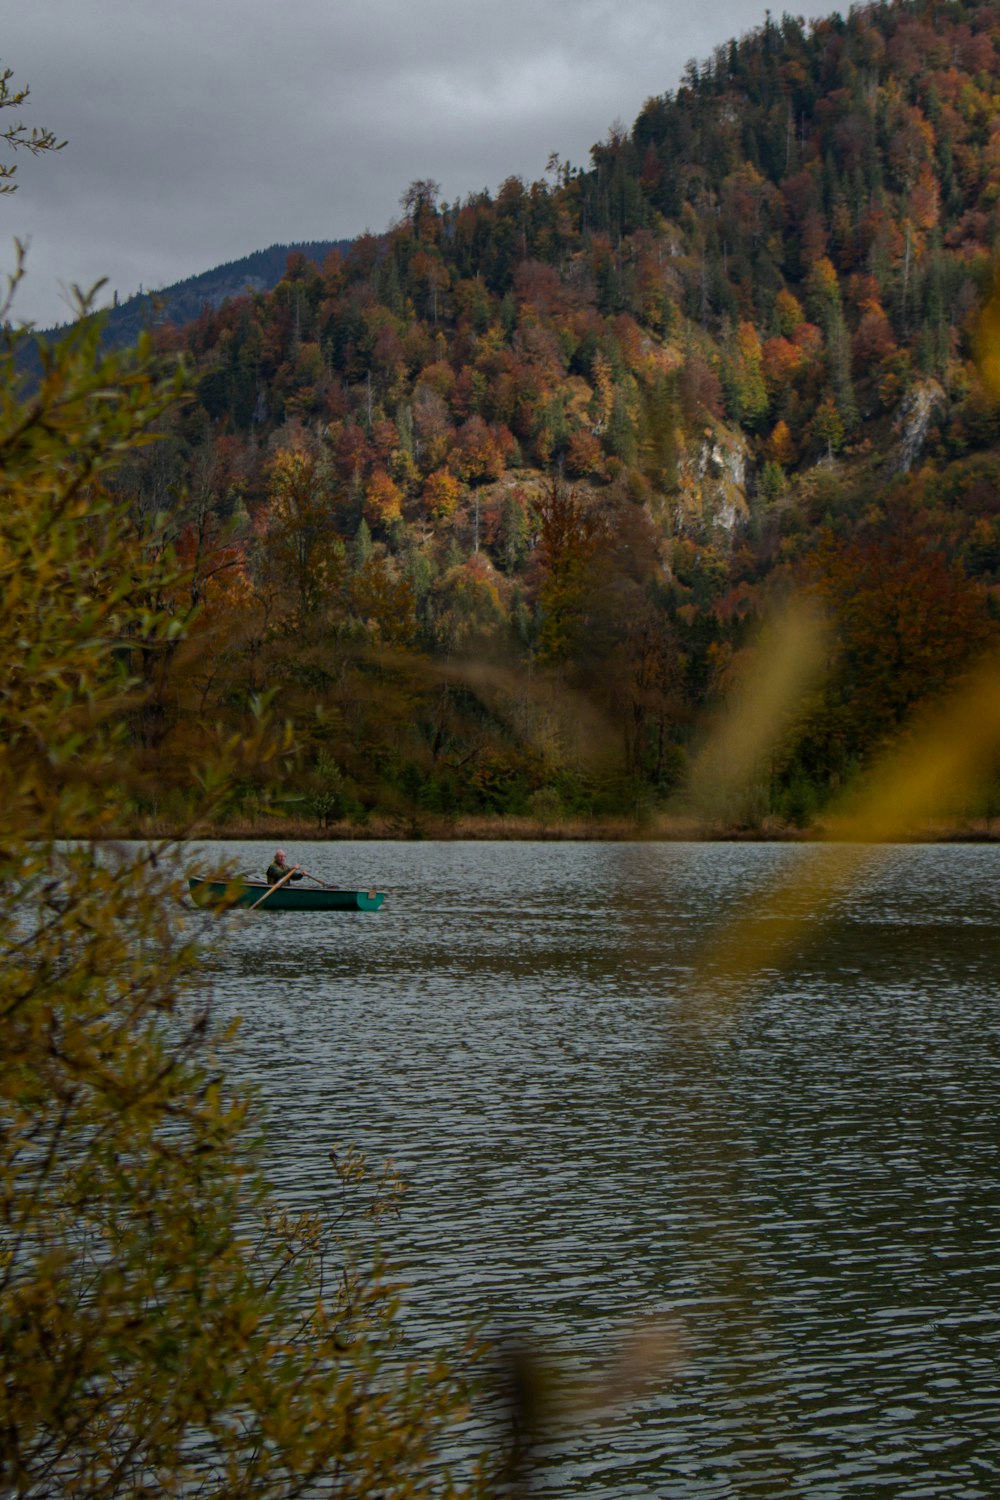 Una persona in un kayak in un lago circondato da alberi